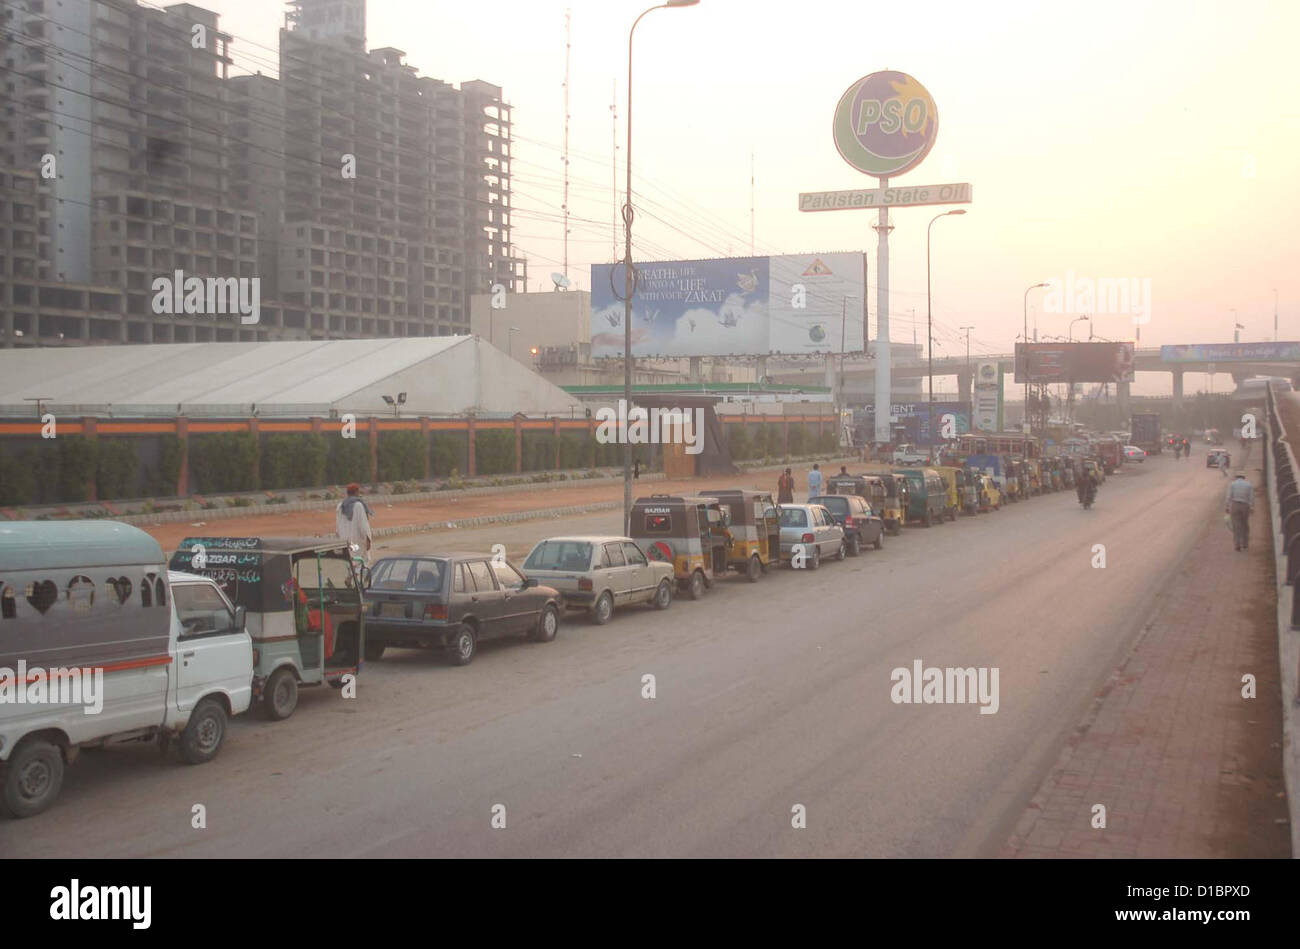 Un gran número de vehículos que están en cola esperando su turno para llenar el CNG en una estación de GNC, cerca de KPT Interchange en Karachi el viernes, 14 de diciembre de 2012. Foto de stock